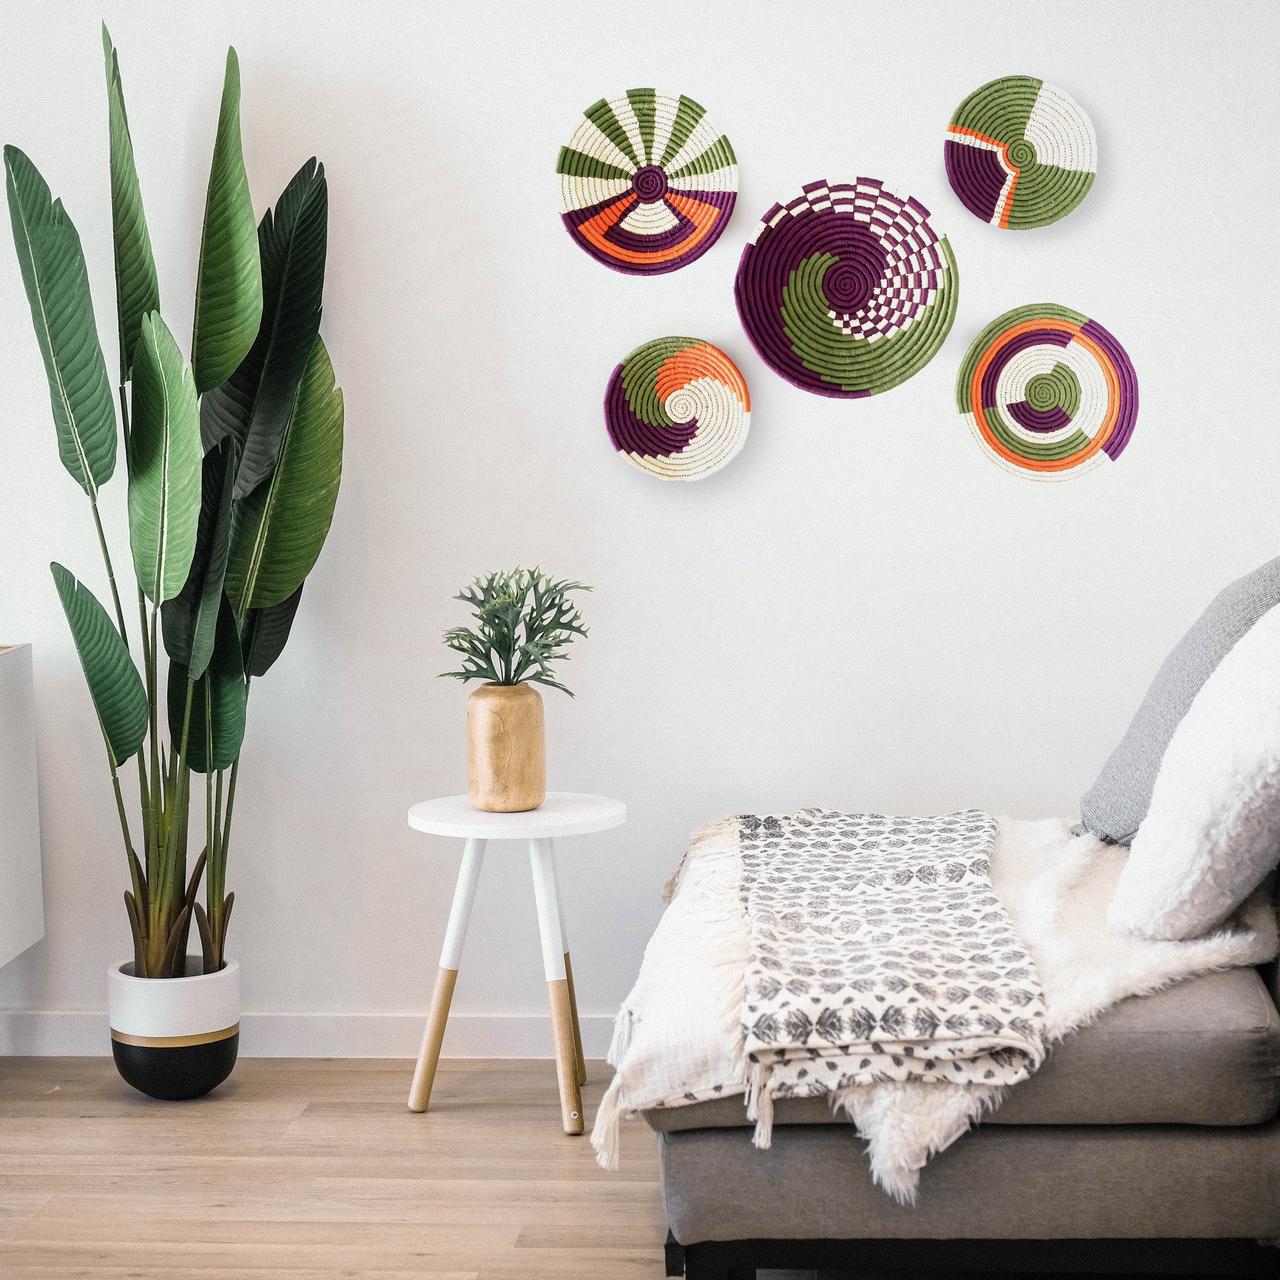 handmade-sabai-grass-wall-baskets-decorative-home-decor